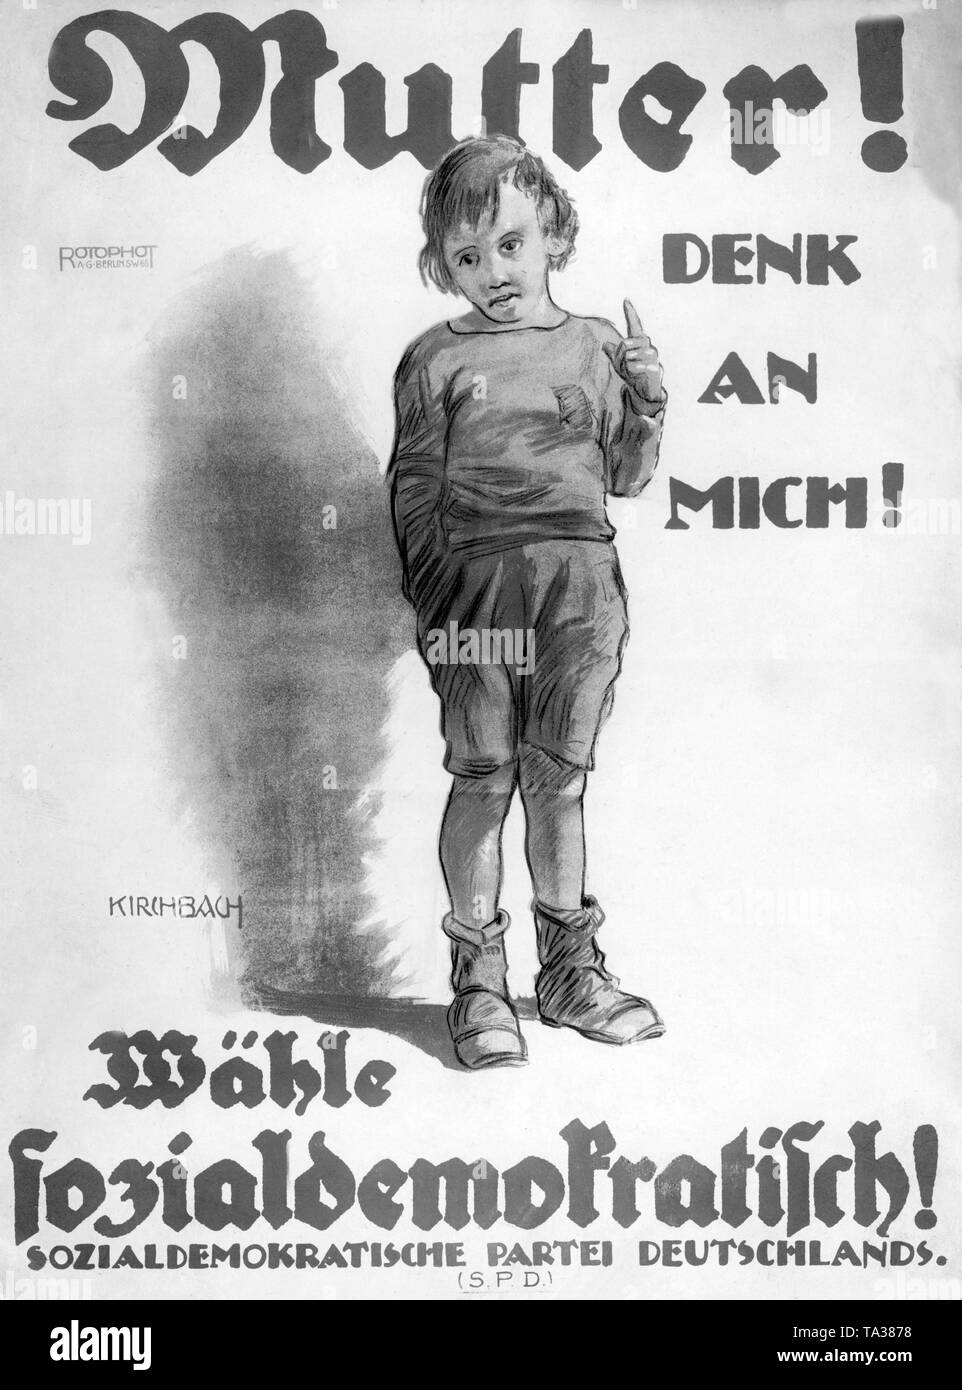 Wahlplakat der SPD für die Wahl der Nationalversammlung. Die SPD läuft eine Kampagne mit einem Kind, das Motto "andere von mir denken!" Und ein Appell für die Sozialdemokraten zu stimmen. Stockfoto